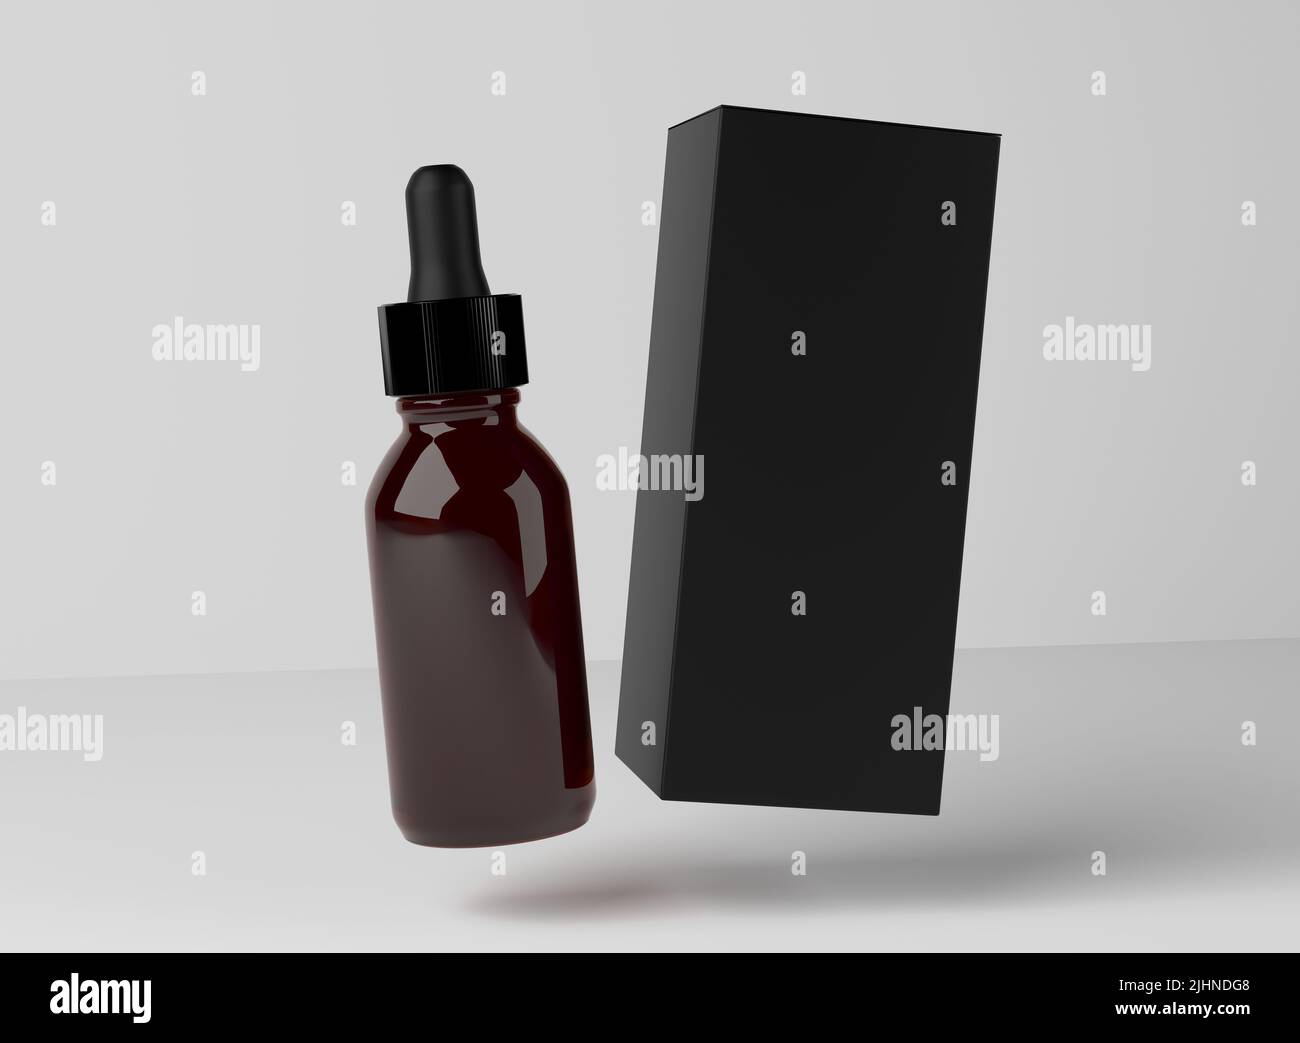 Gesichtsöl Serum Amber Brauglas Flasche, Design bereit Droplet mit Black Box Mockup, 3D Render Stockfoto